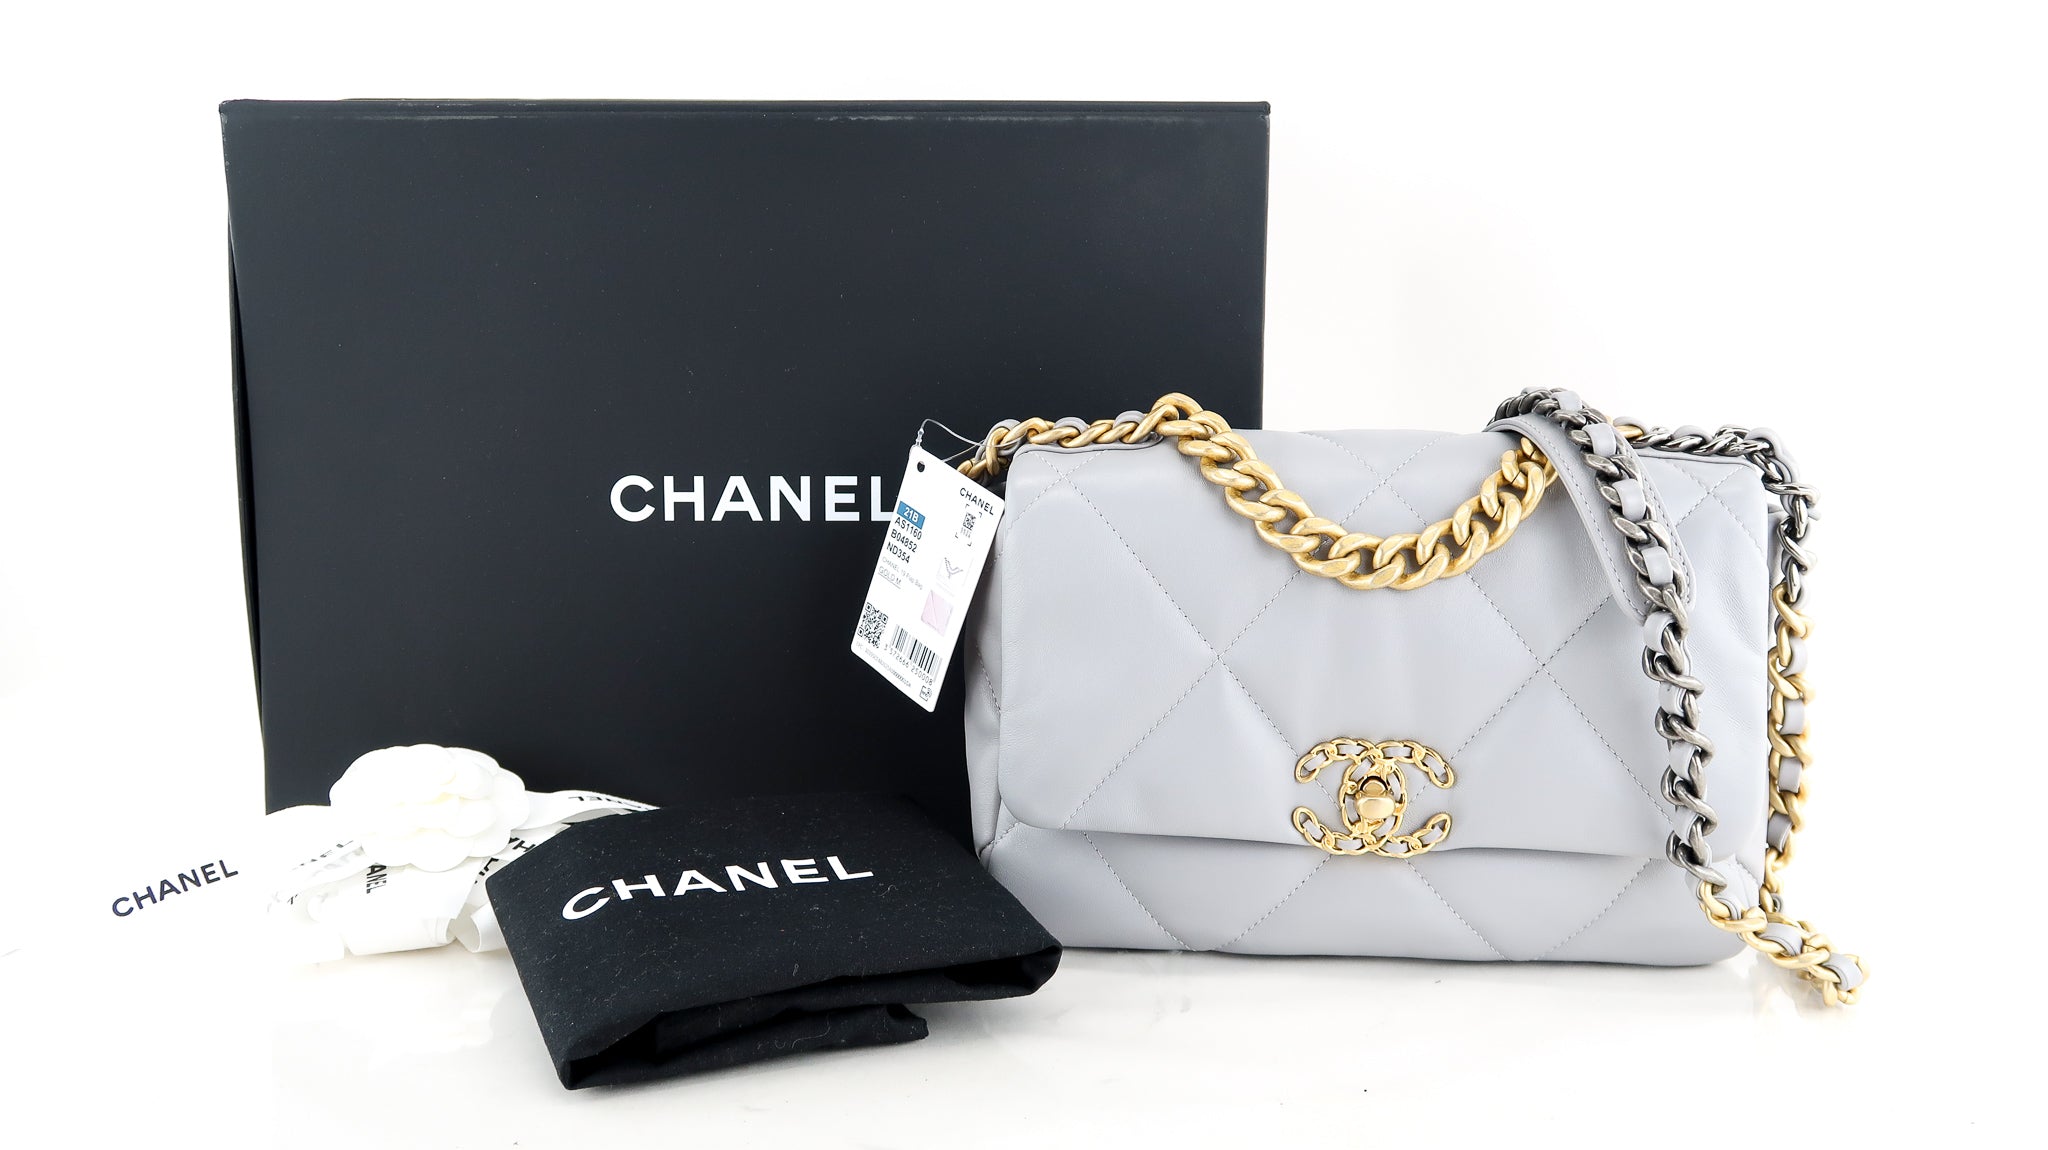 Chanel Tan Quilted Lambskin Medium Chanel 19 Bag, myGemma, AU